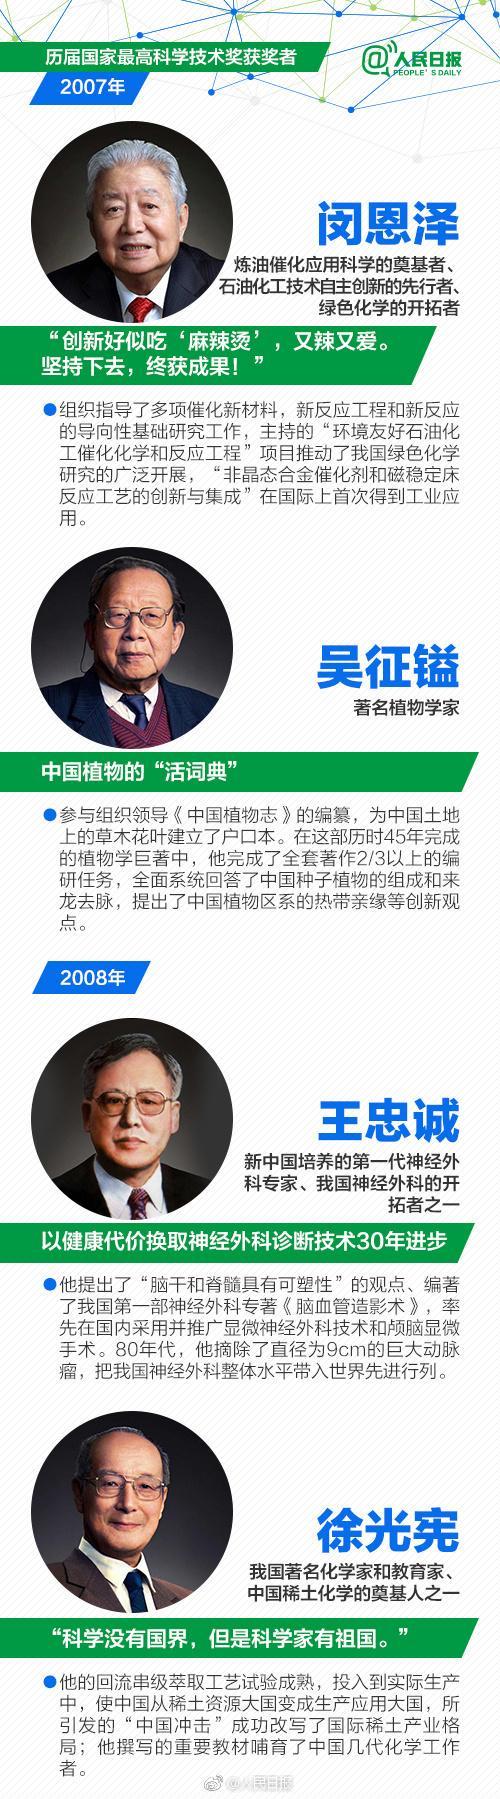 历届国家科学技术奖获得者名单:袁隆平屠呦呦上榜